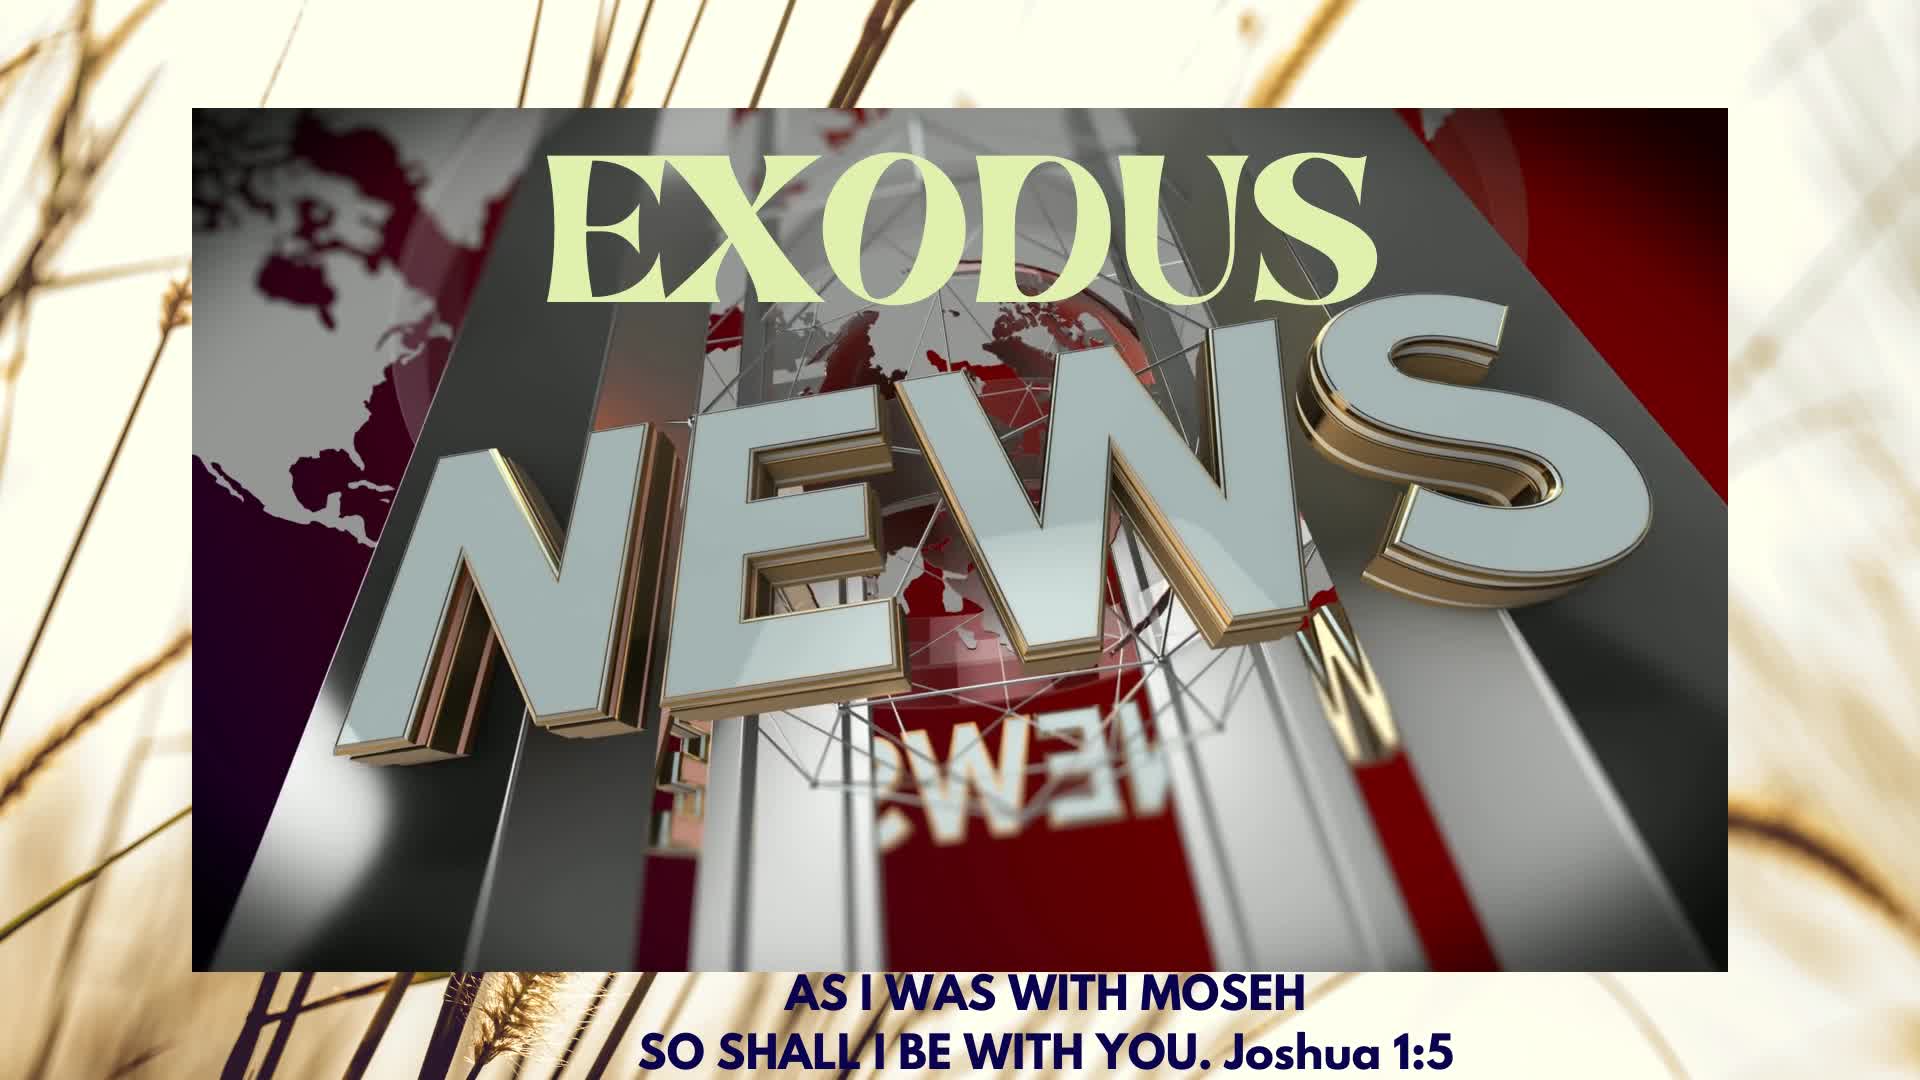 Exodus News